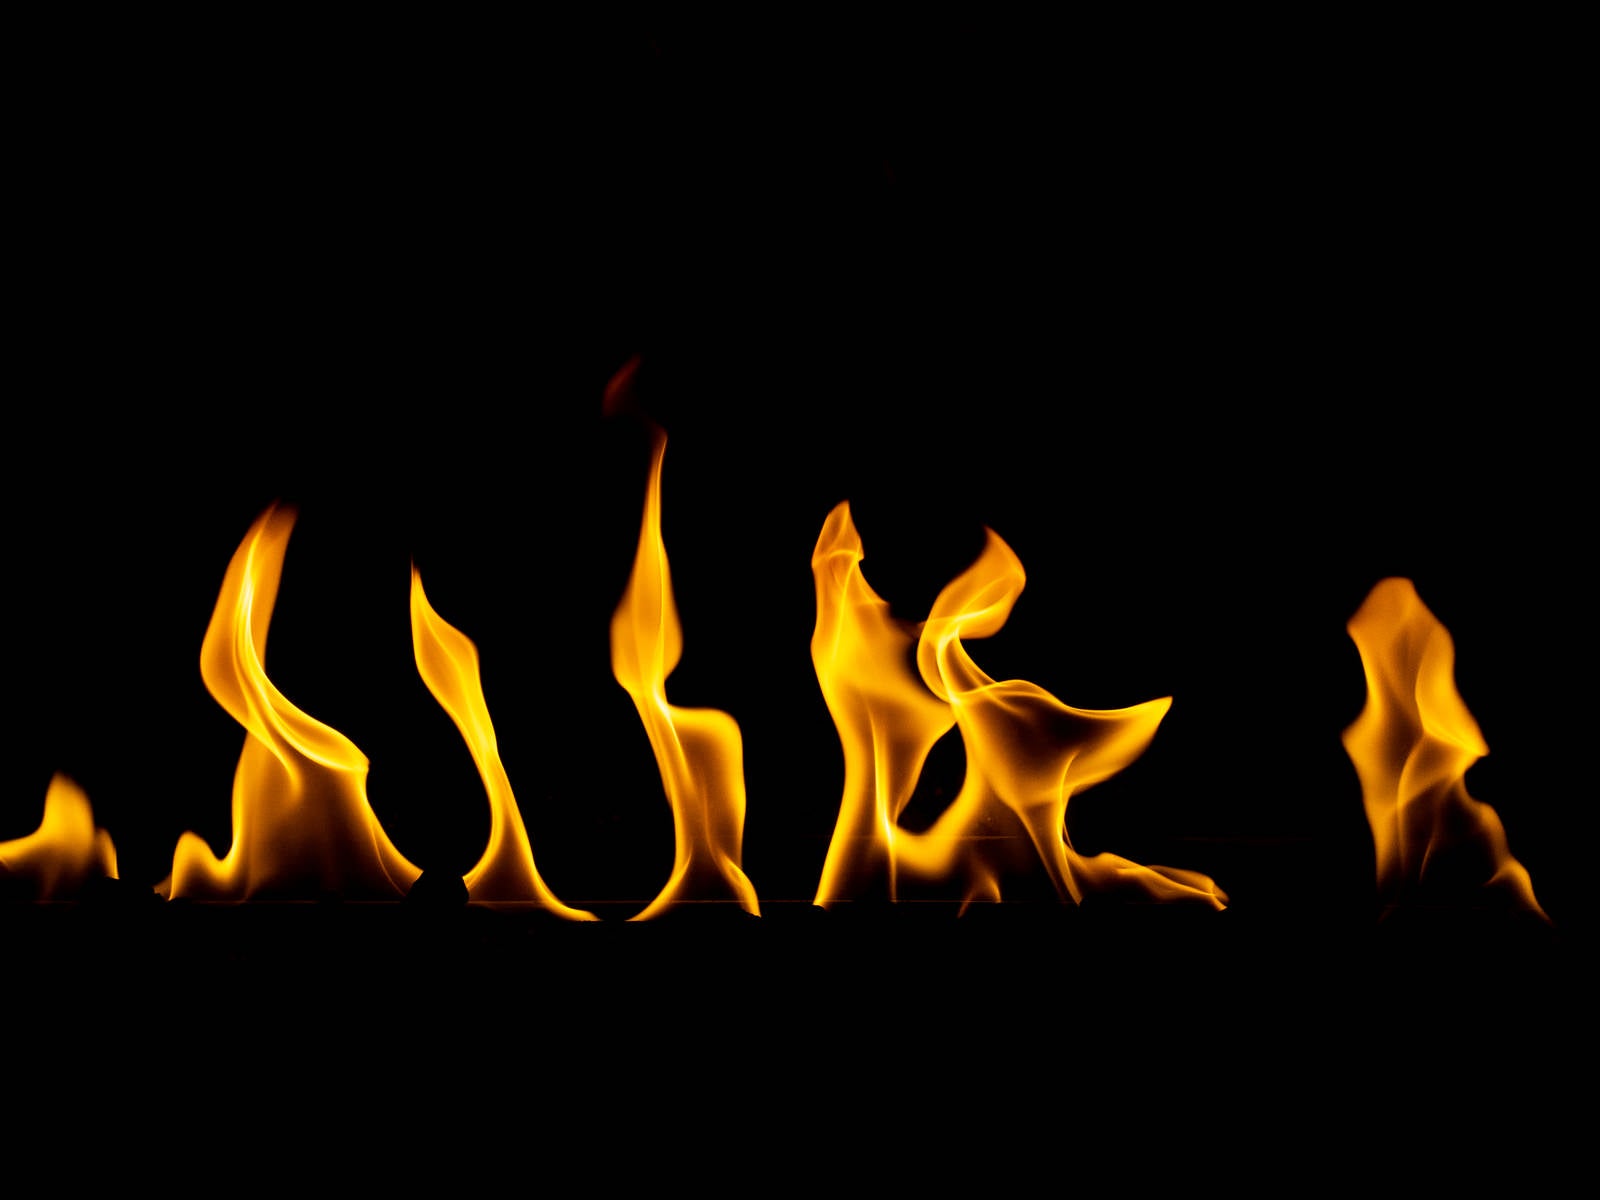 「メラメラと燃える火の中」の写真